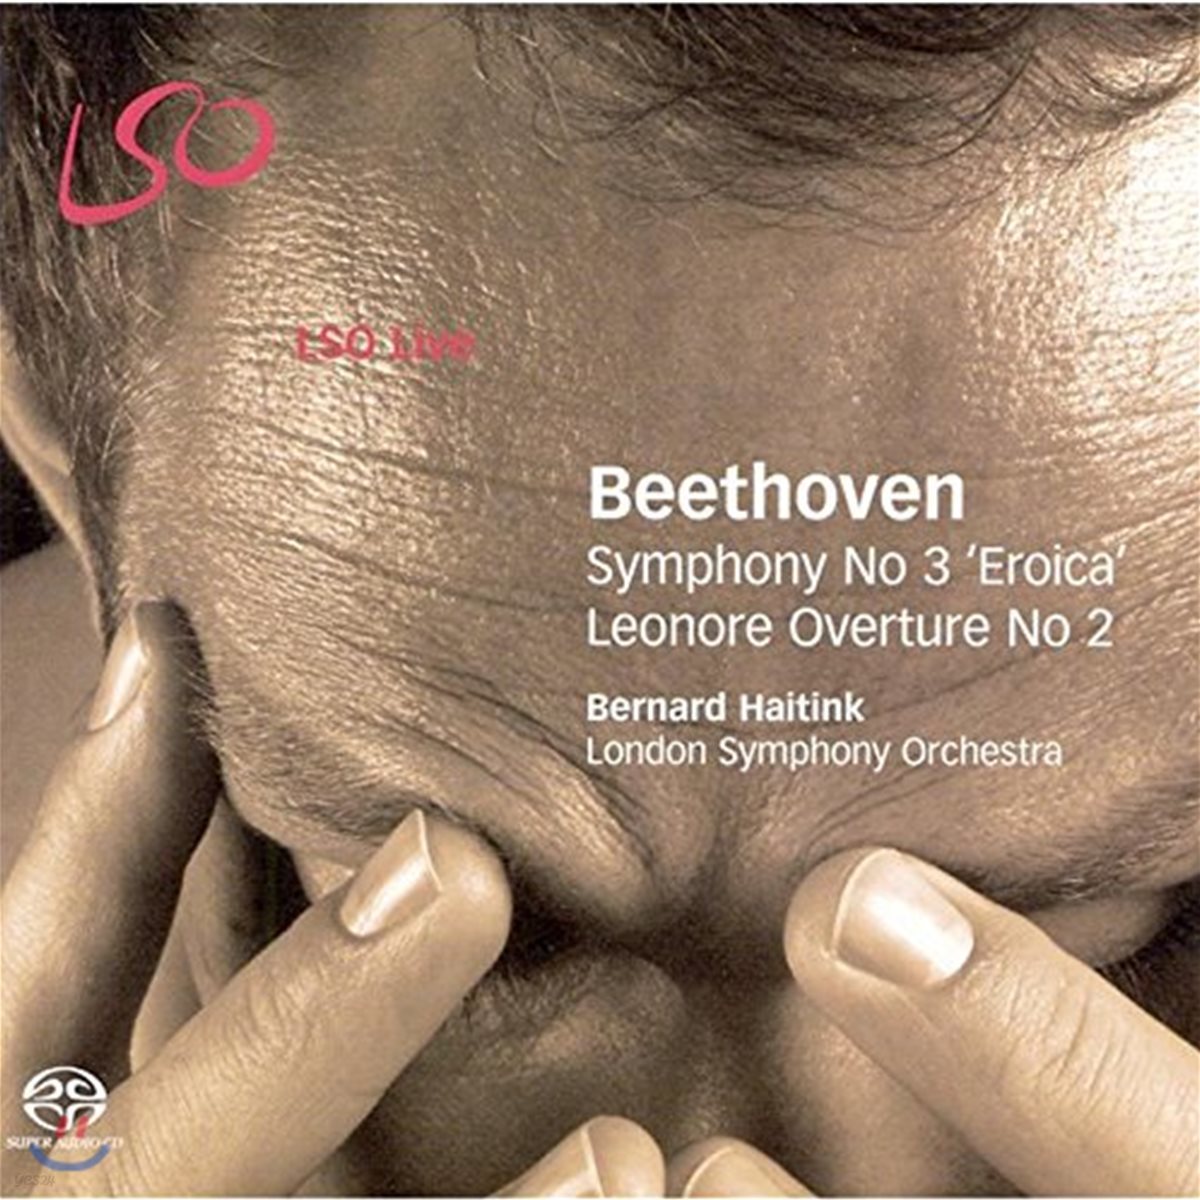 Bernard Haitink 베토벤 : 교향곡 3번 “영웅”, 레오노레 서곡 2번- 베르나르드 하이팅크 (Beethoven: Symphony No. 3 in E flat major 'Eroica')